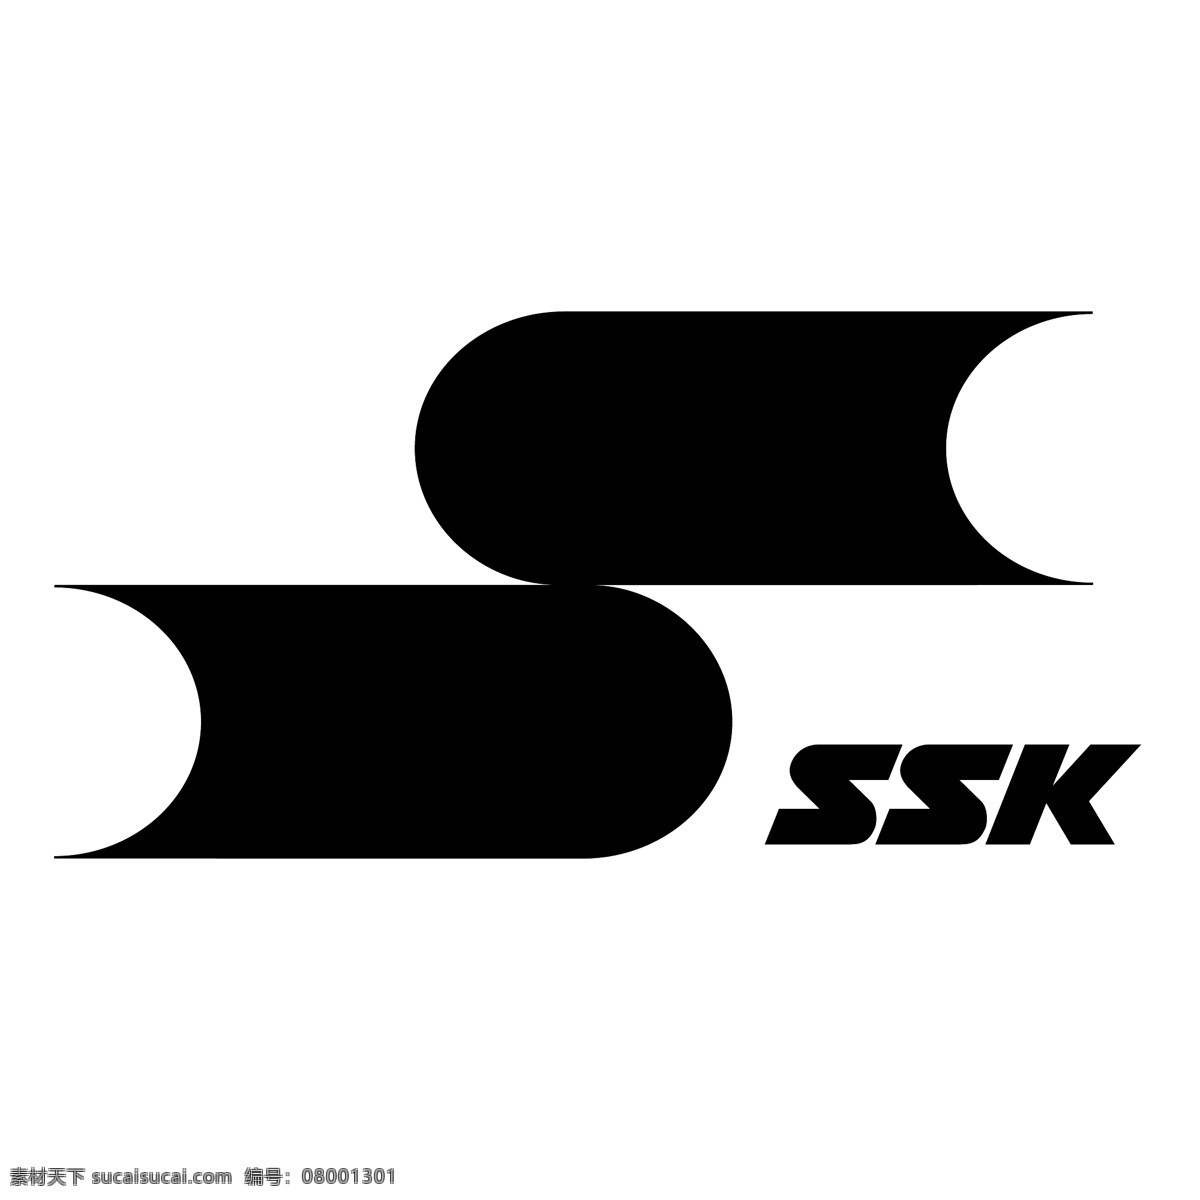 科学 知识 社会学 ssk ssk标志 标识为免费 psd源文件 logo设计